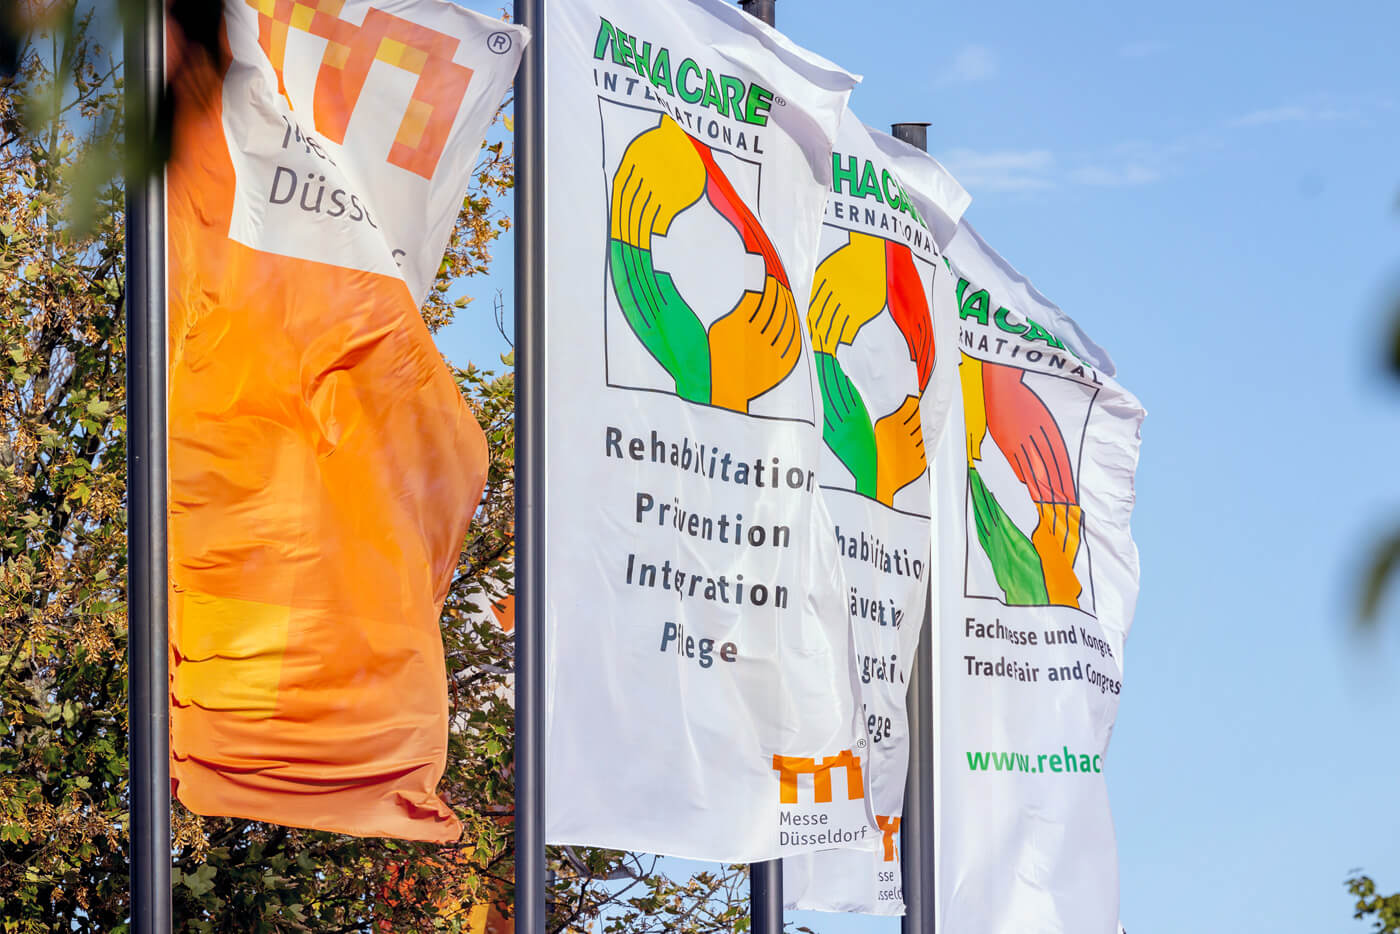 Das Foto zeigt vier wehende Fahnen: Die erste zeigt das Logo der Messe Düsseldorf auf orangenem Grund. Die drei weißen Fahnen dahinter bewerben die Messe „Rehacare“.